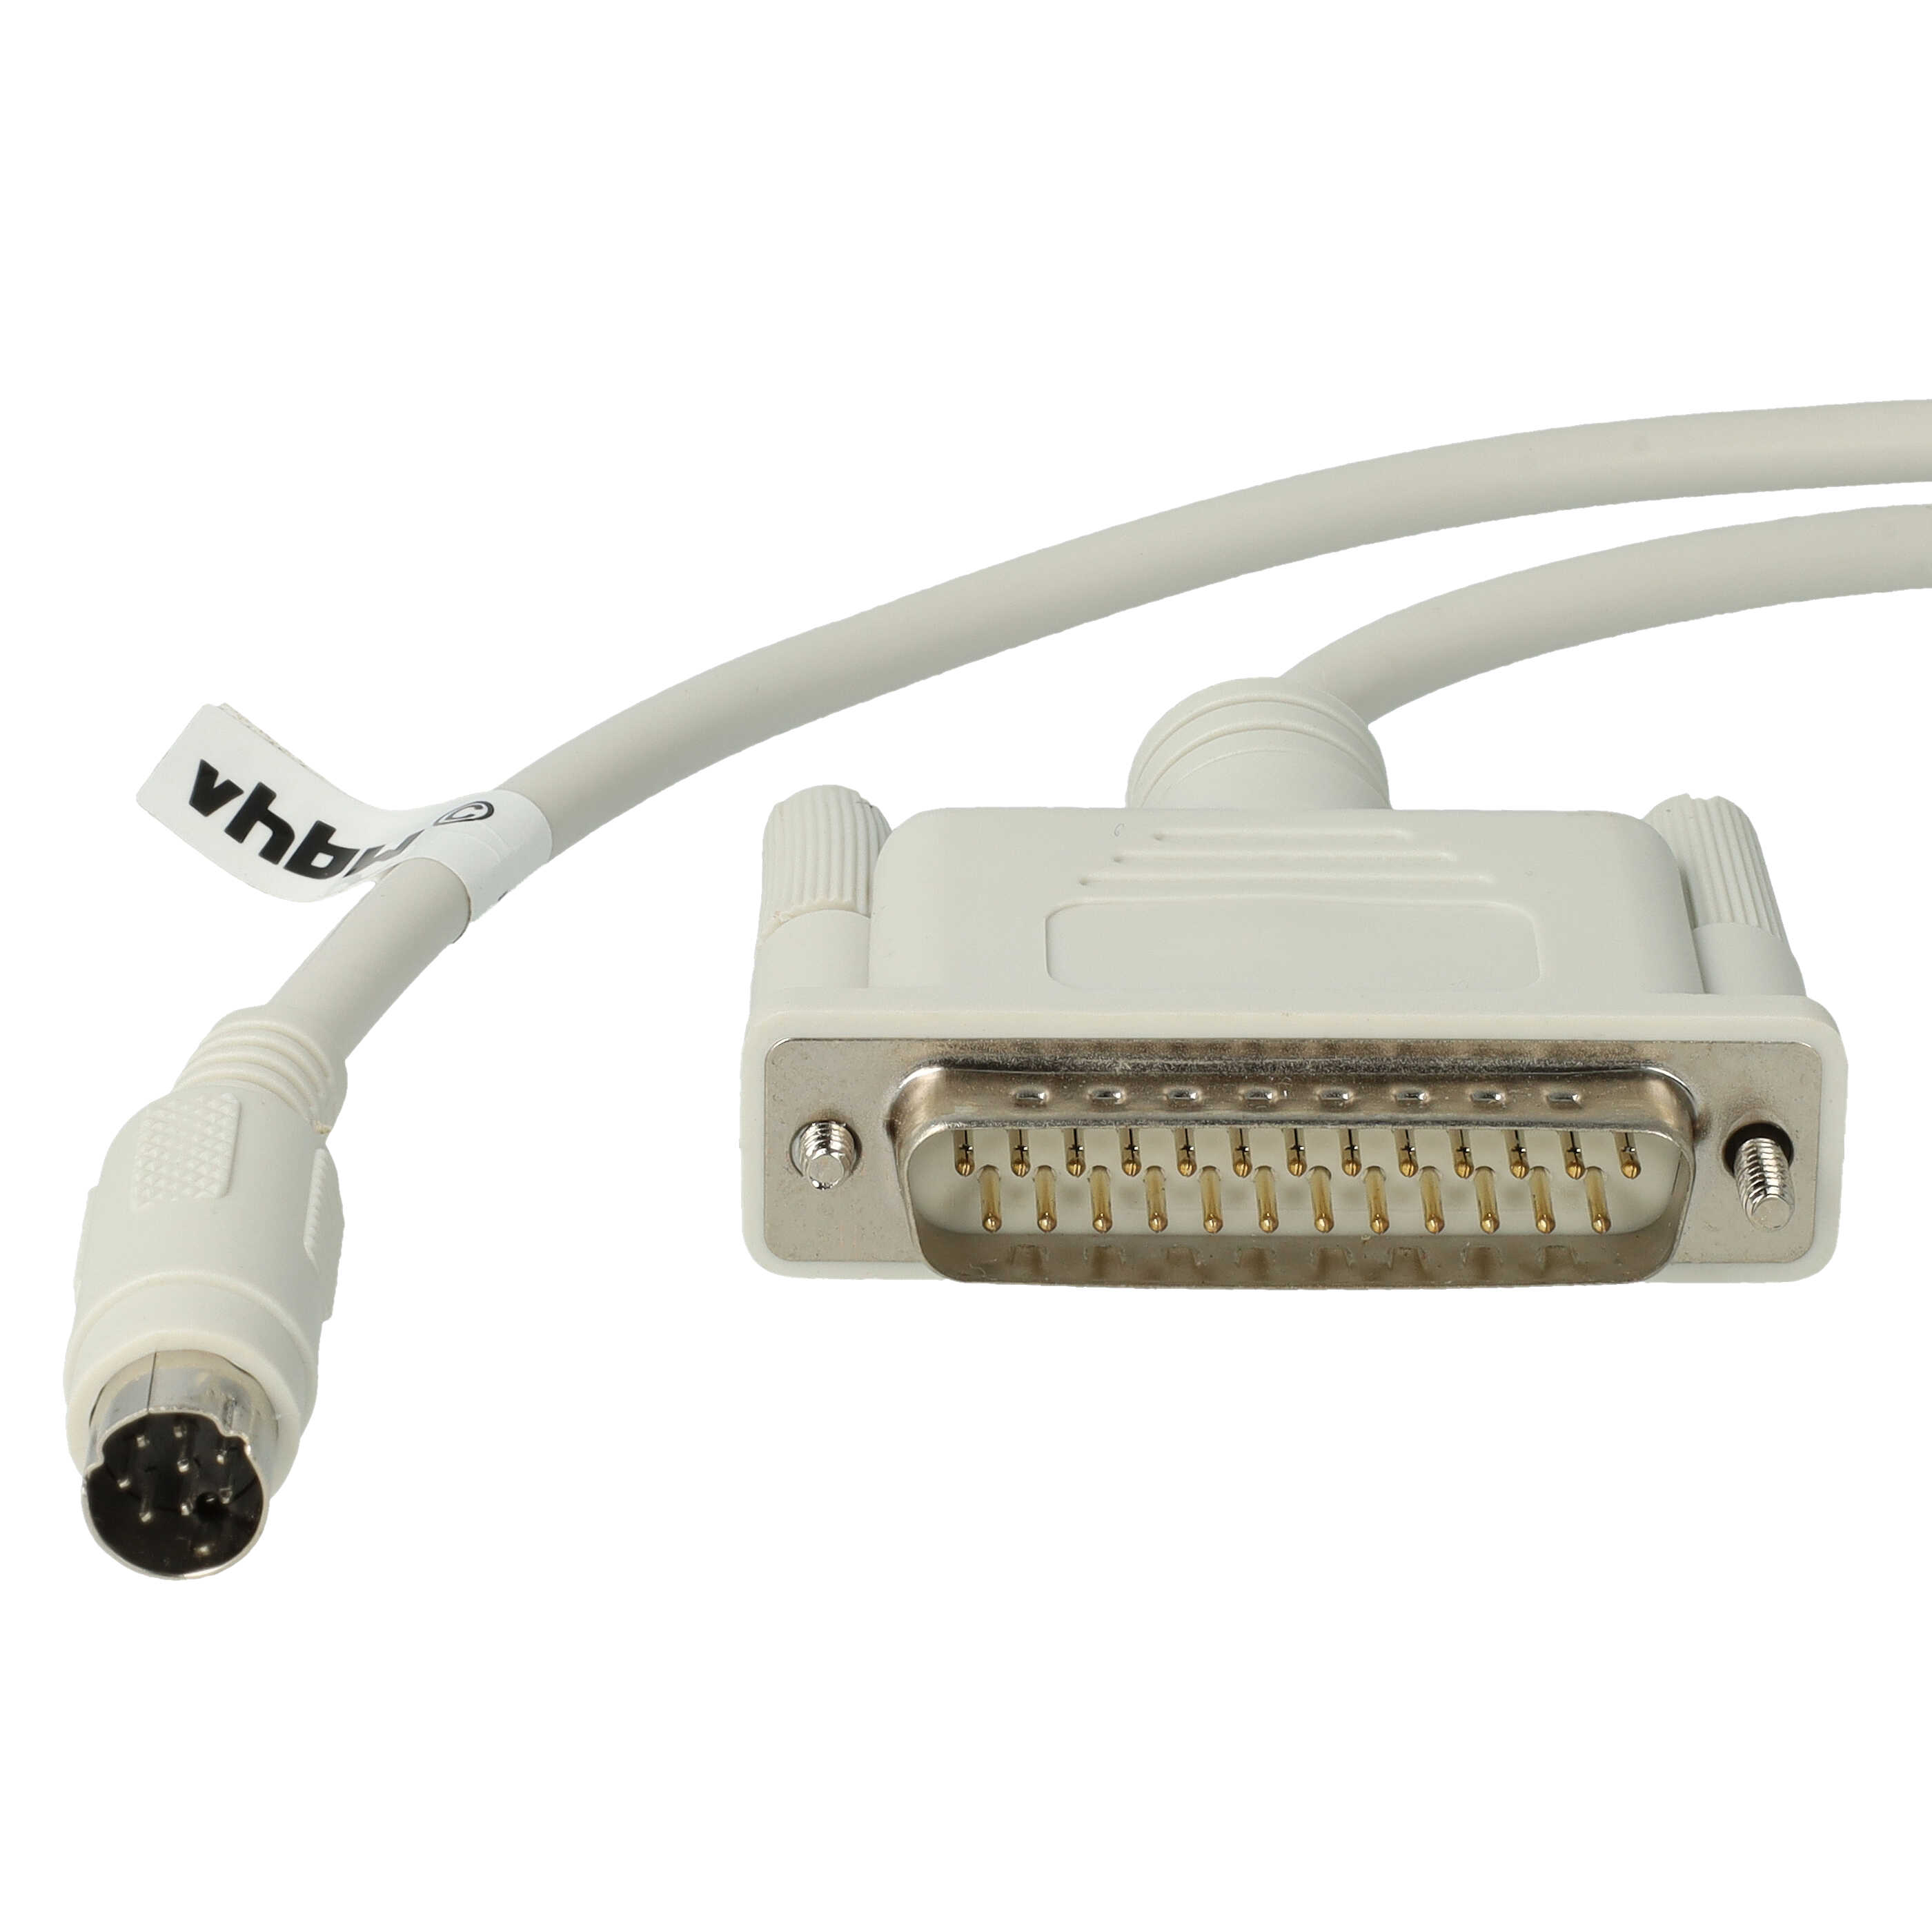 Câble de programmation RS-232 pour périphérique Mitsubishi MELSEC FX - Adaptateur 200cm gris